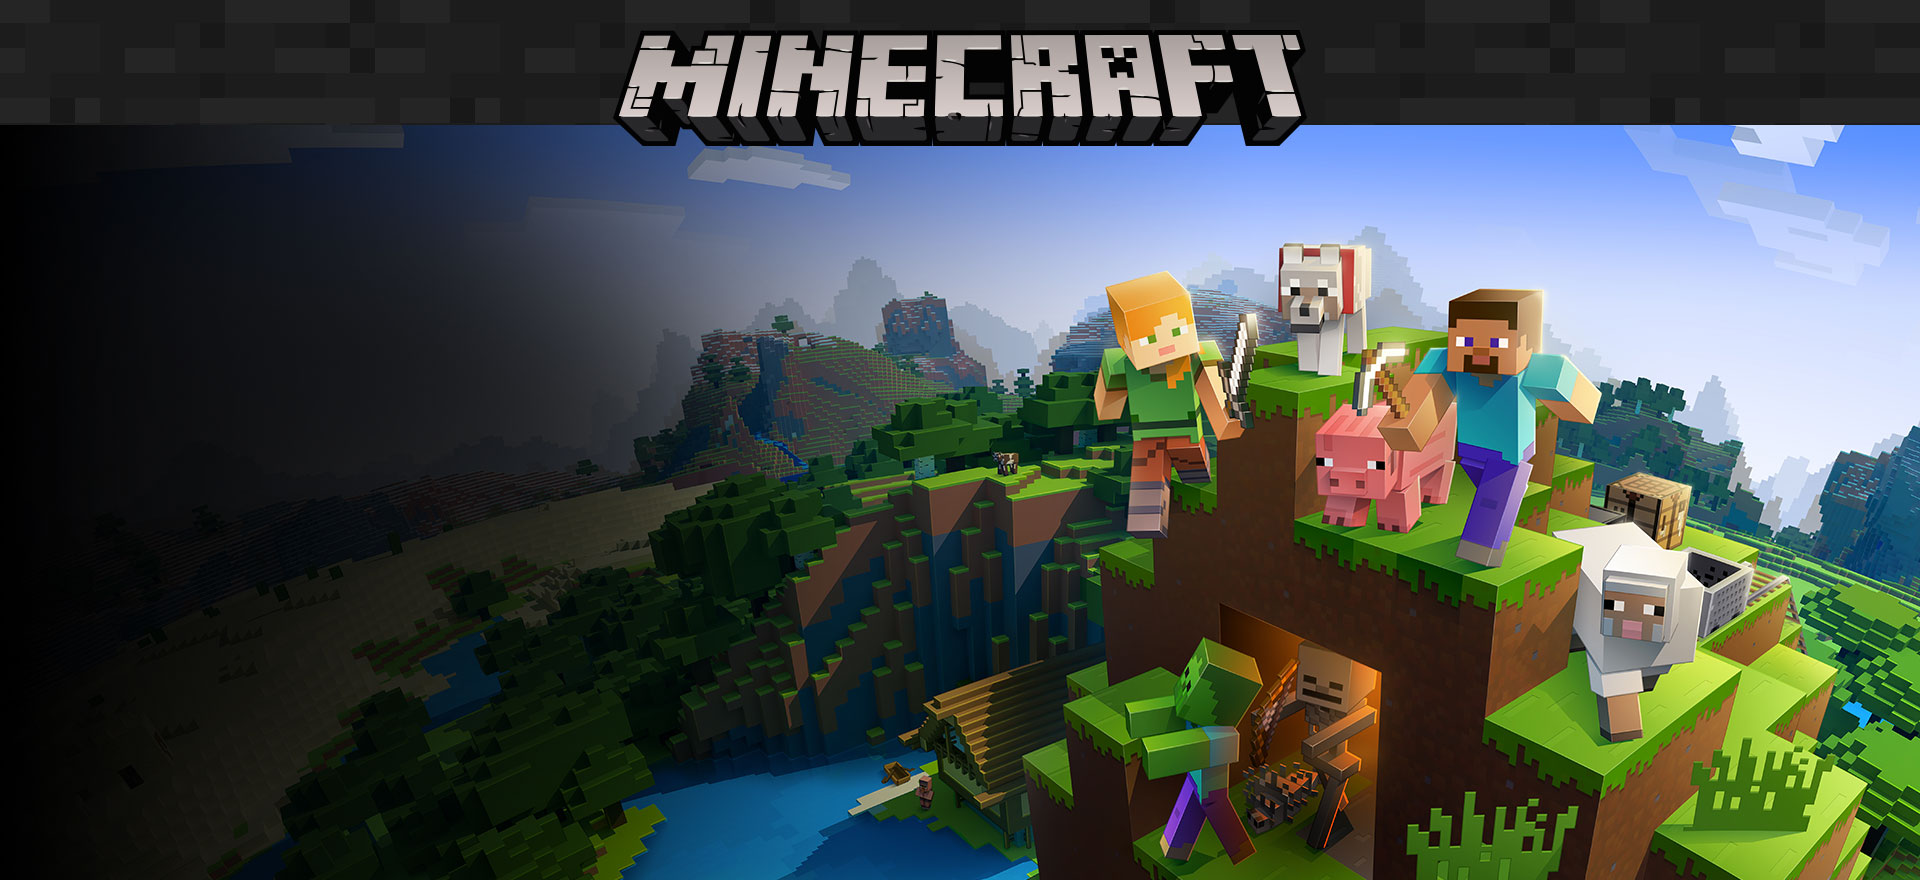 Продажи Minecraft более 200 миллионов, 126 миллионов человек играют ежемесячно 1